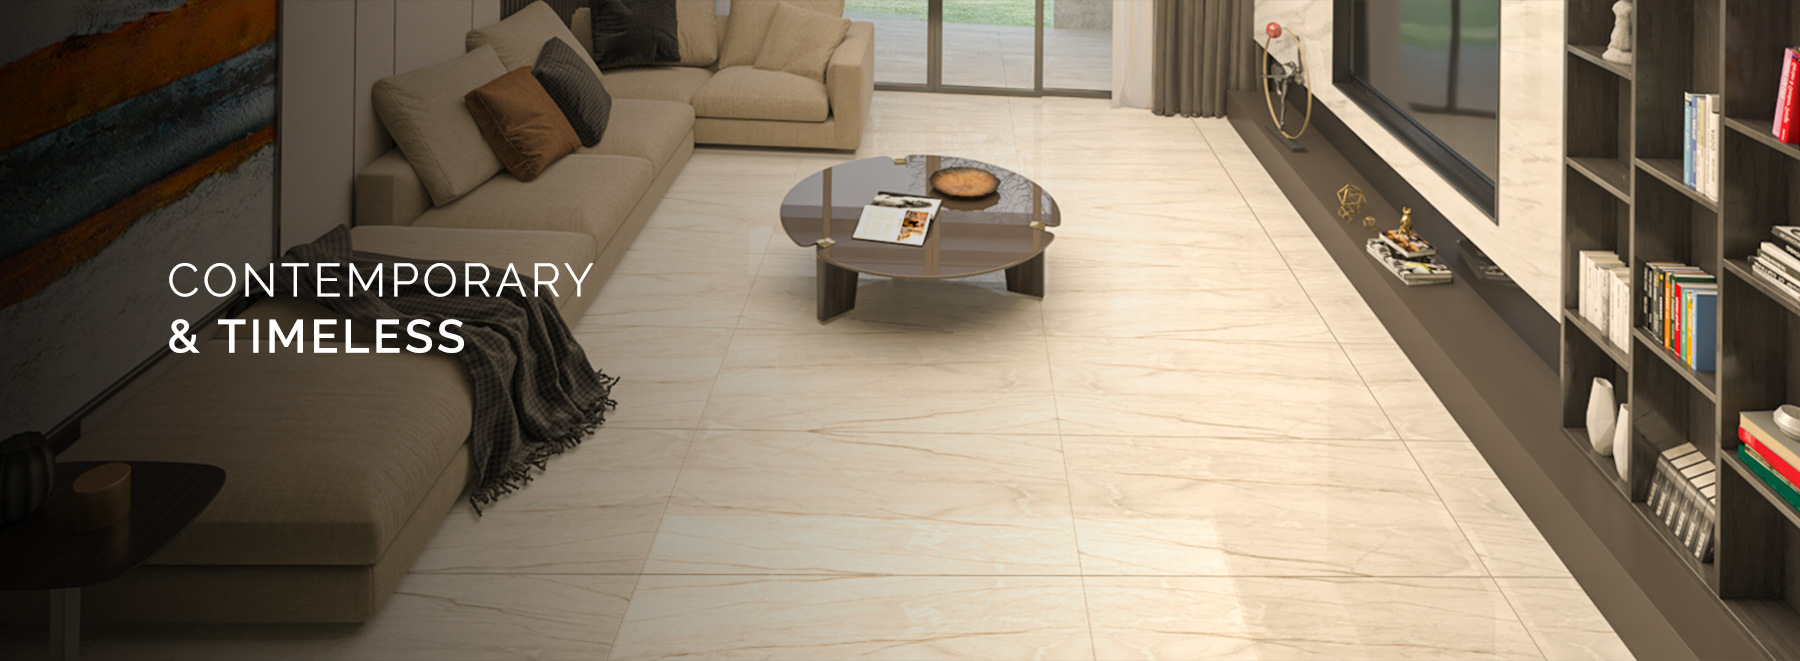 somany living room floor tiles